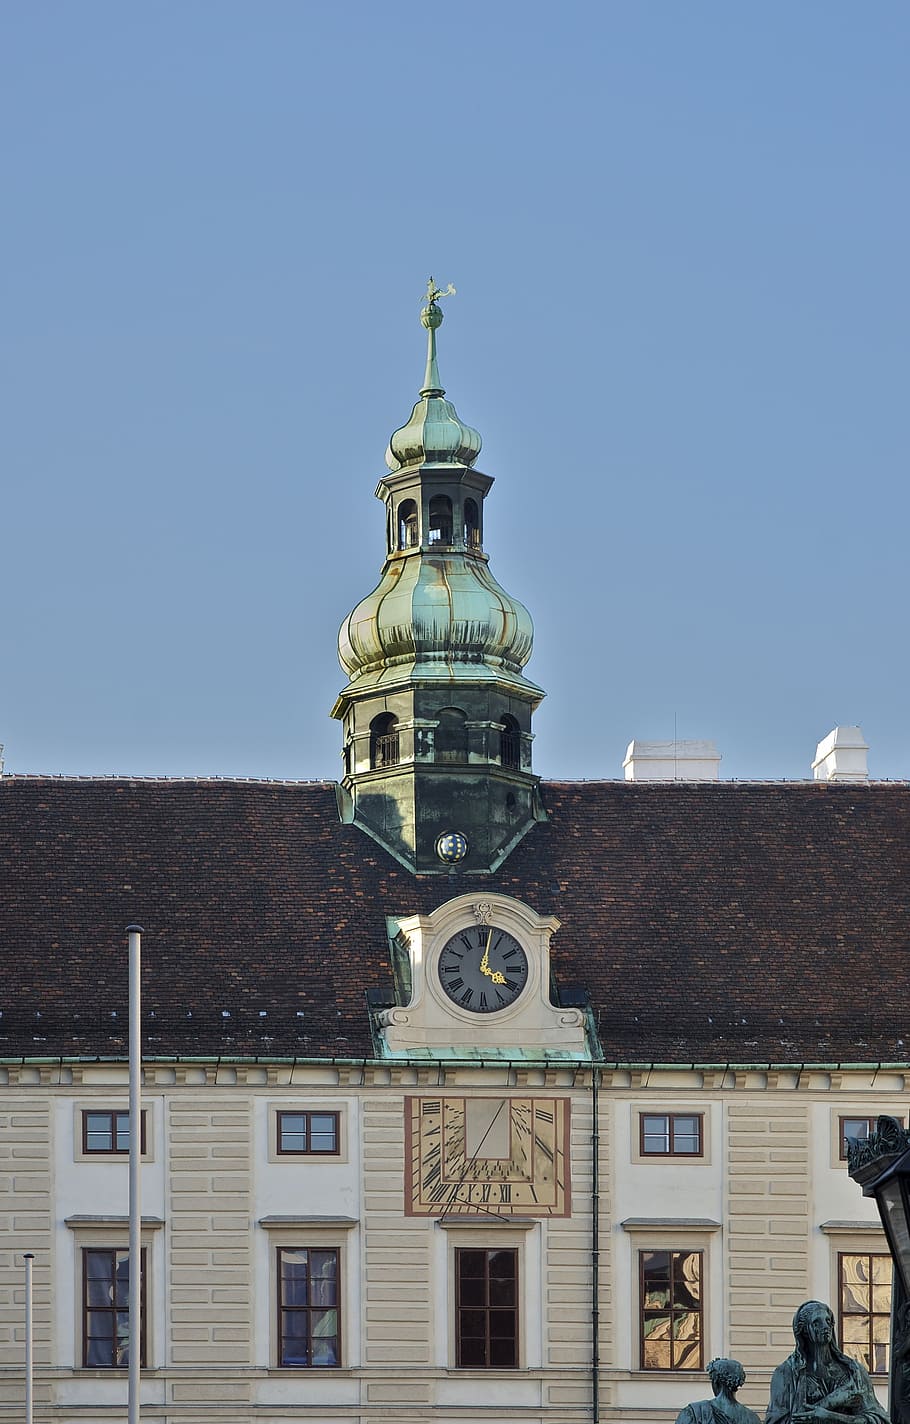 amalienburg, torre do relógio, relógio de sol, palácio, viena, histórico, marco, astronômico, exterior do edifício, arquitetura